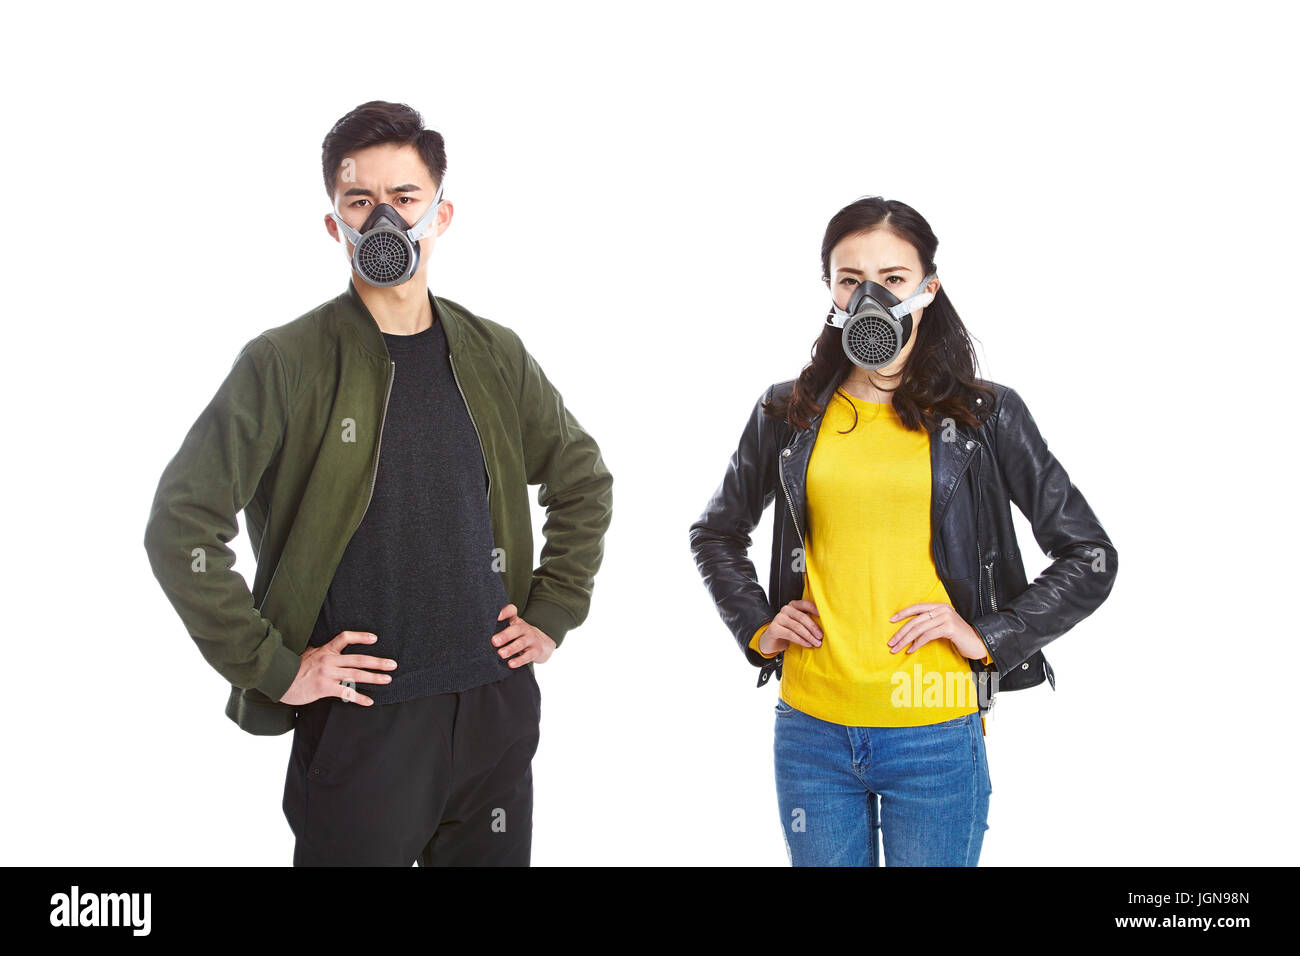 Hommes et femme portant le masque à gaz de l'appareil photo à regarder avec des armes akimbo, isolé sur fond blanc. Banque D'Images